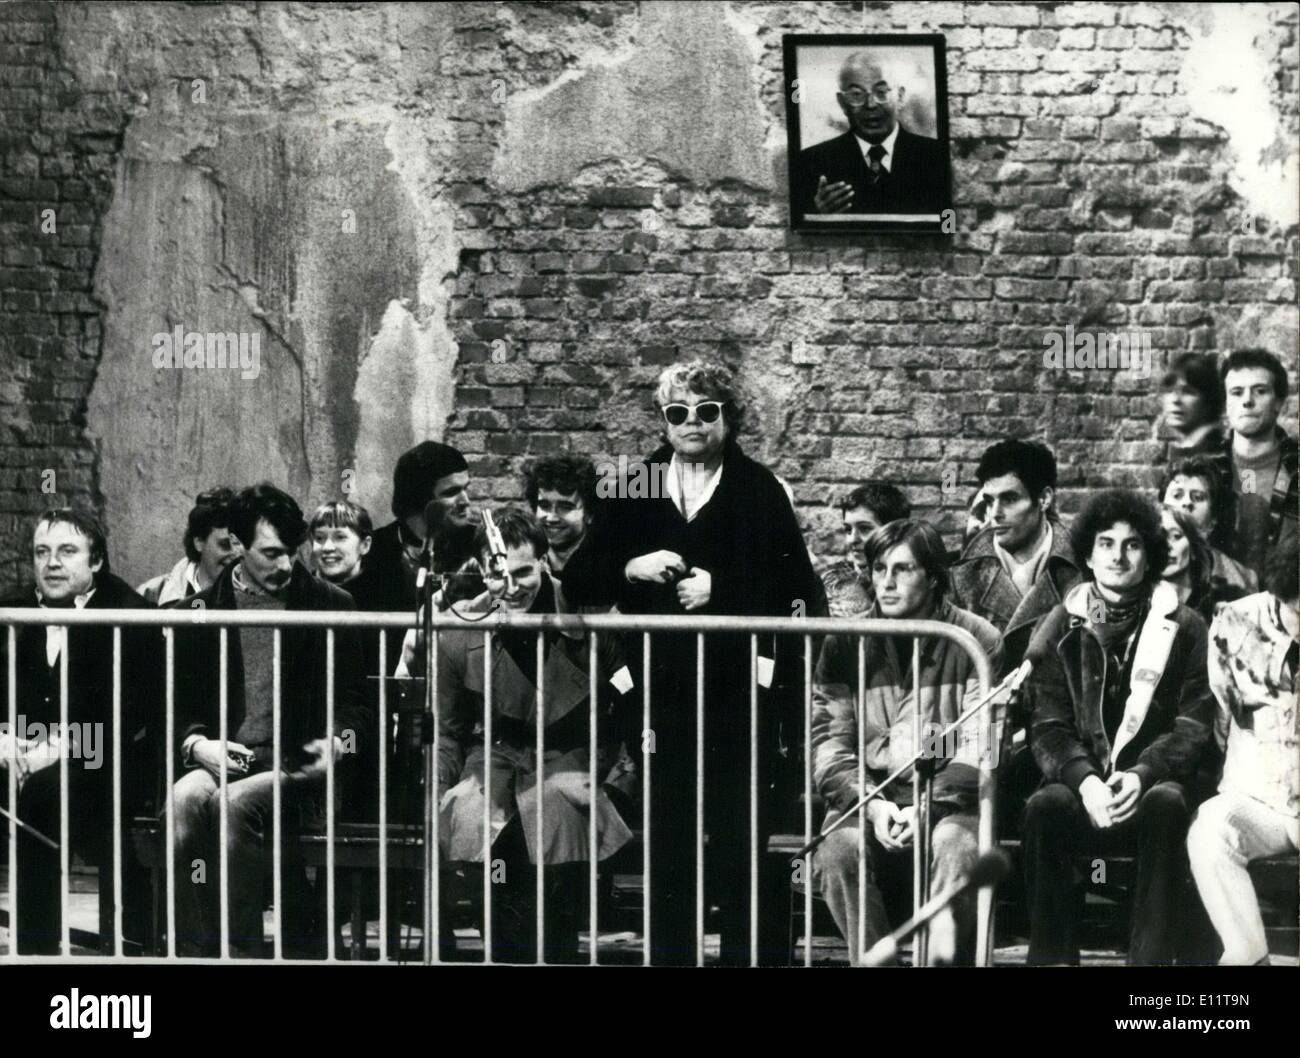 Febbraio 14, 1980 - direttore francese Patrice Chereau girato una scena dalla famosa prova di Praga in una vecchia stazione degli autobus per la TV. Pavel Foto Stock